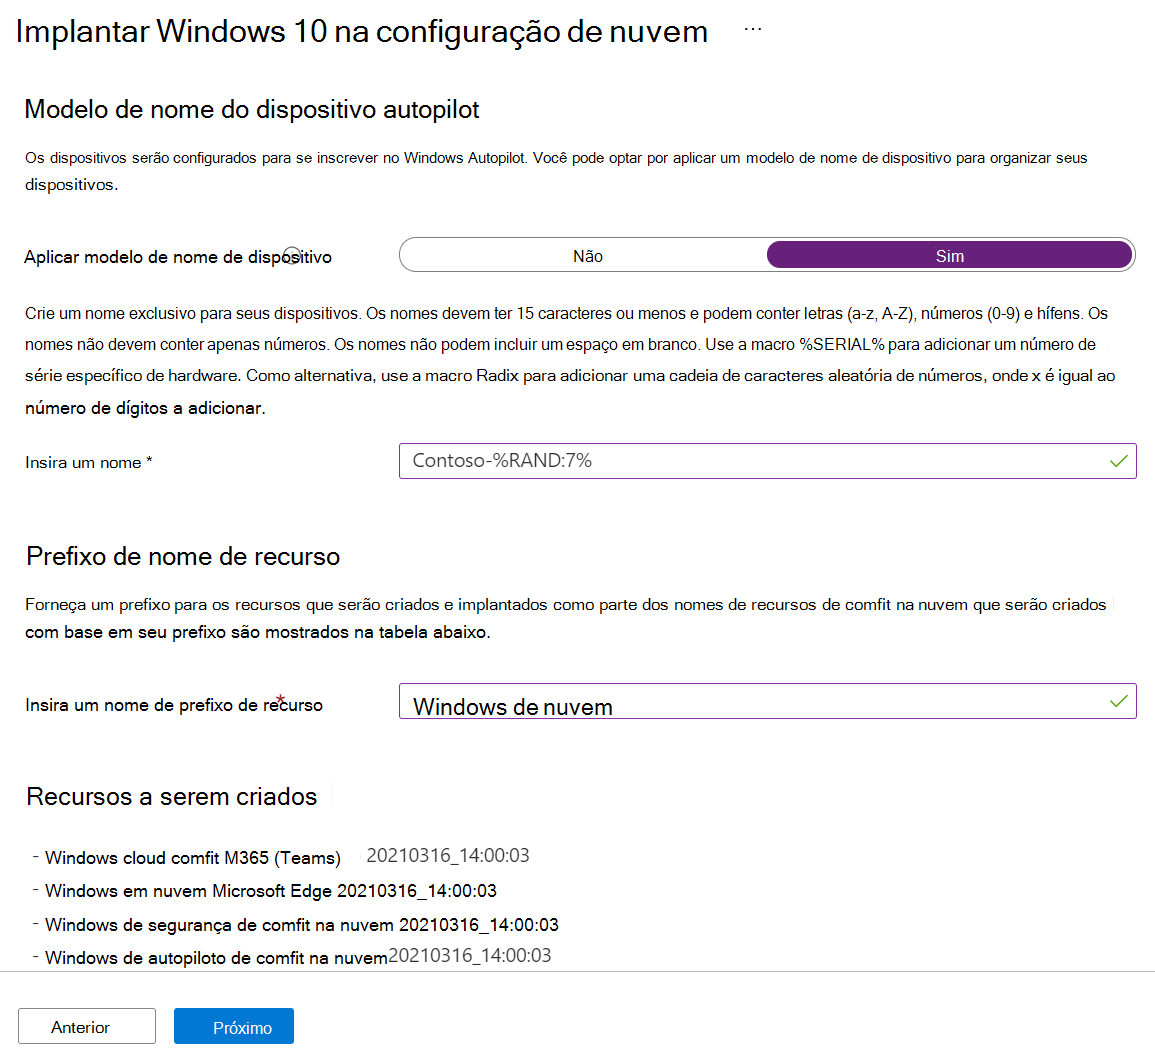 Configure o modelo de nome do dispositivo e o prefixo do nome do recurso num Windows 10 no cenário guiado de configuração da nuvem em Microsoft Intune e Endpoint Manager.